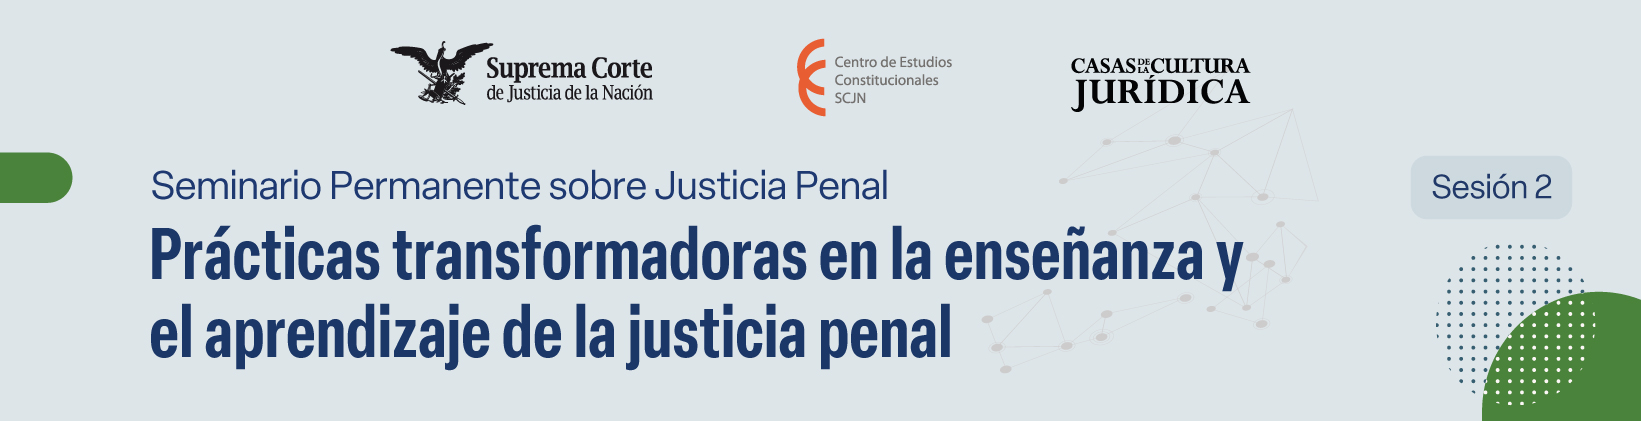 Banner del Seminario de Justicia Penal: Prácticas transformadoras en la enseñanza y el aprendizaje de la justicia penal